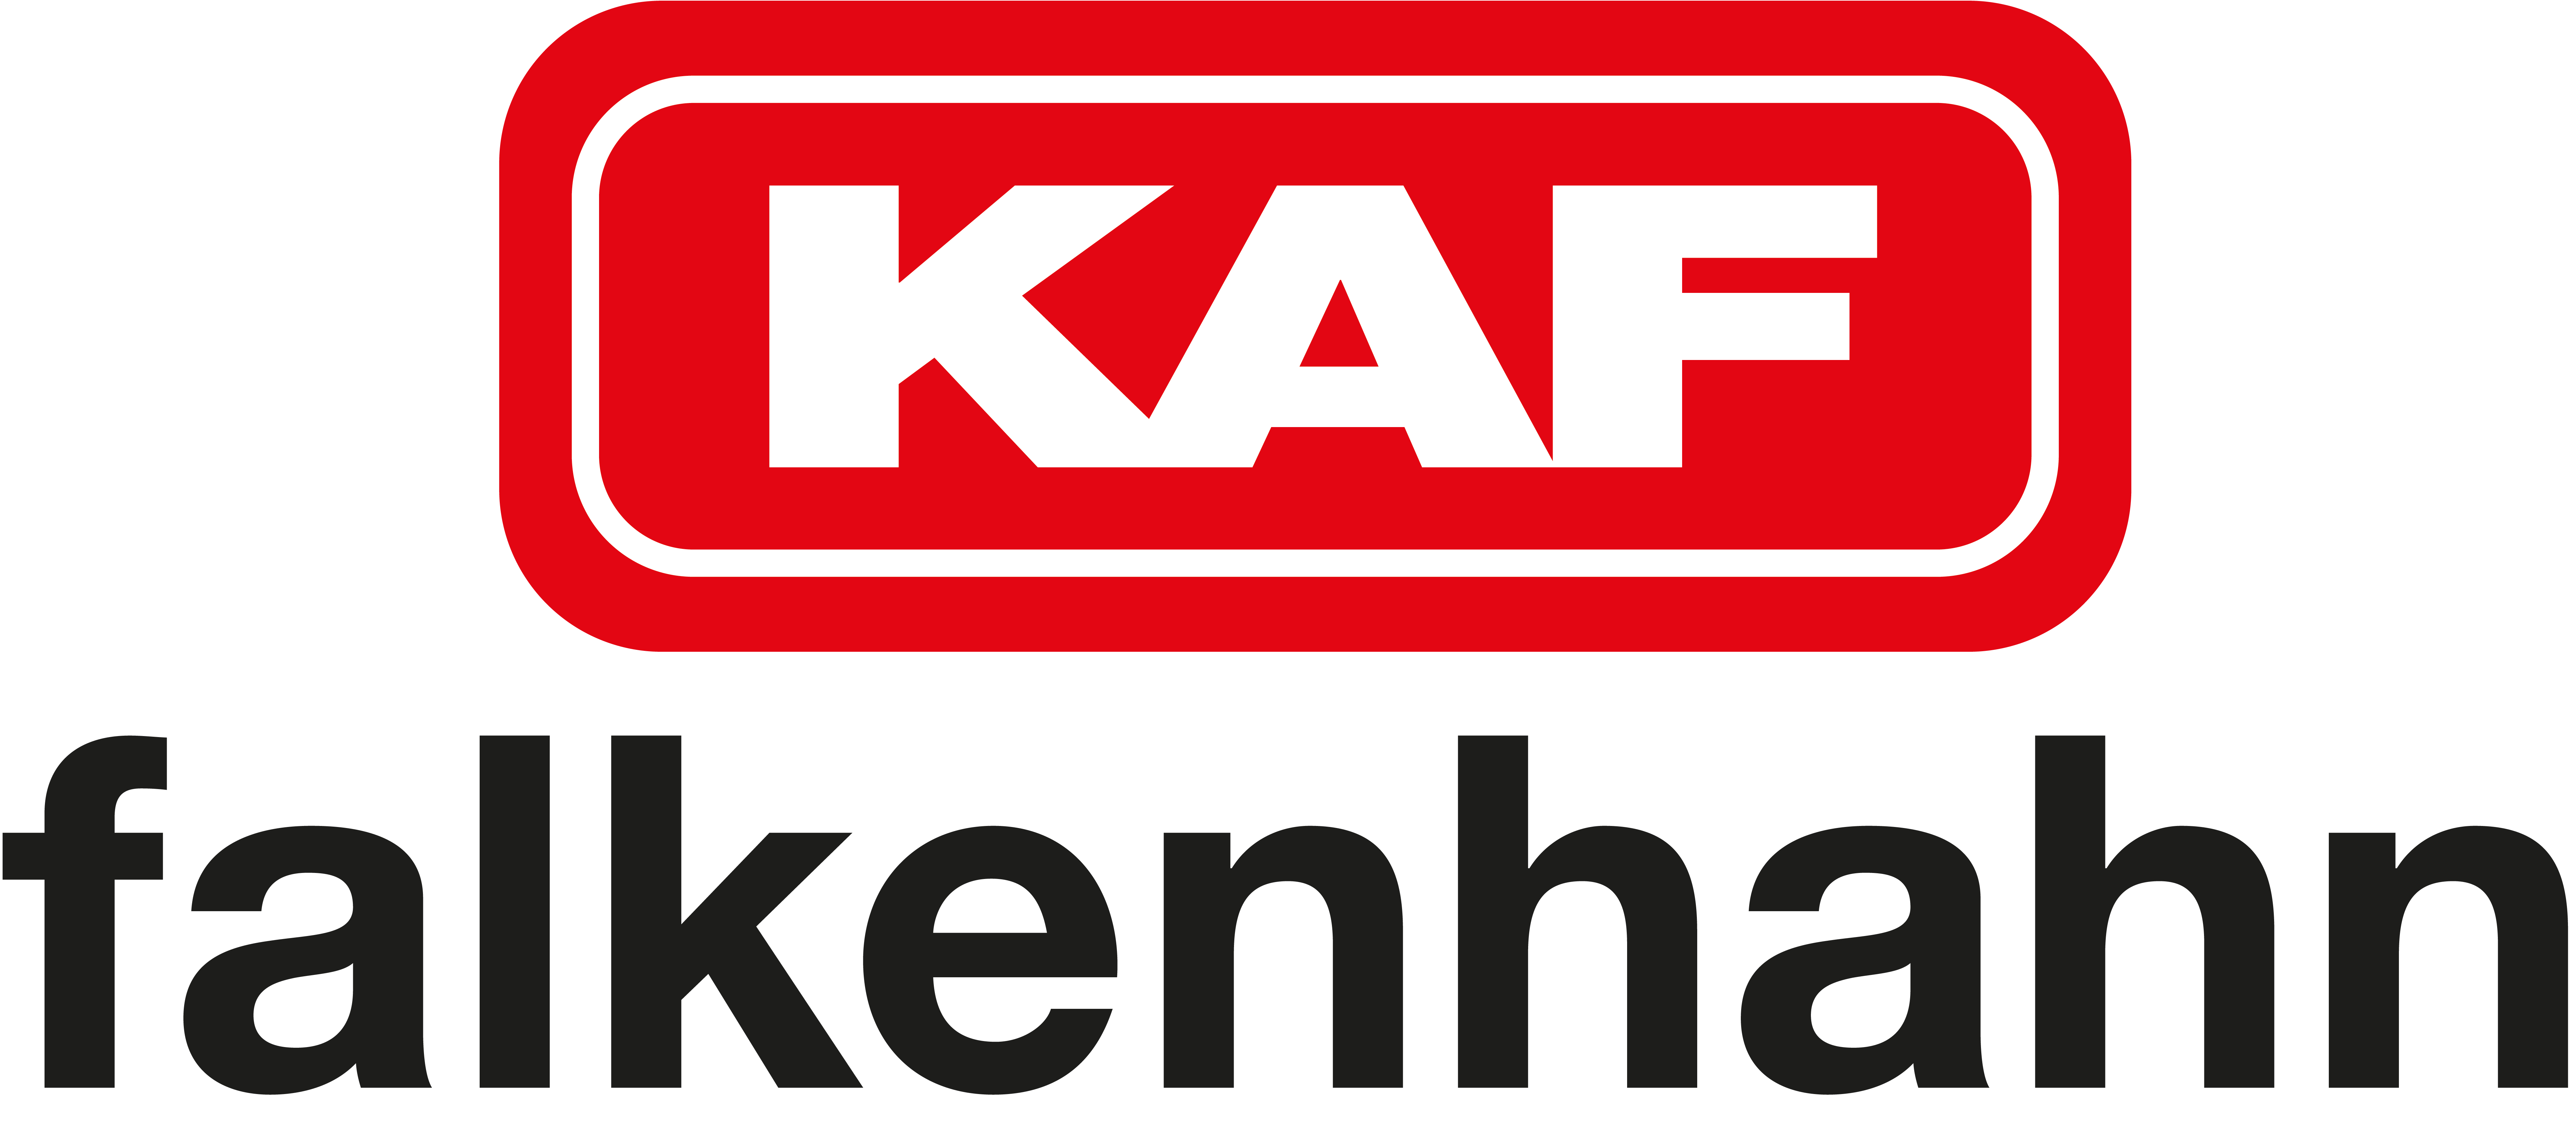 KAF Falkenhahn Unternehmensgruppe